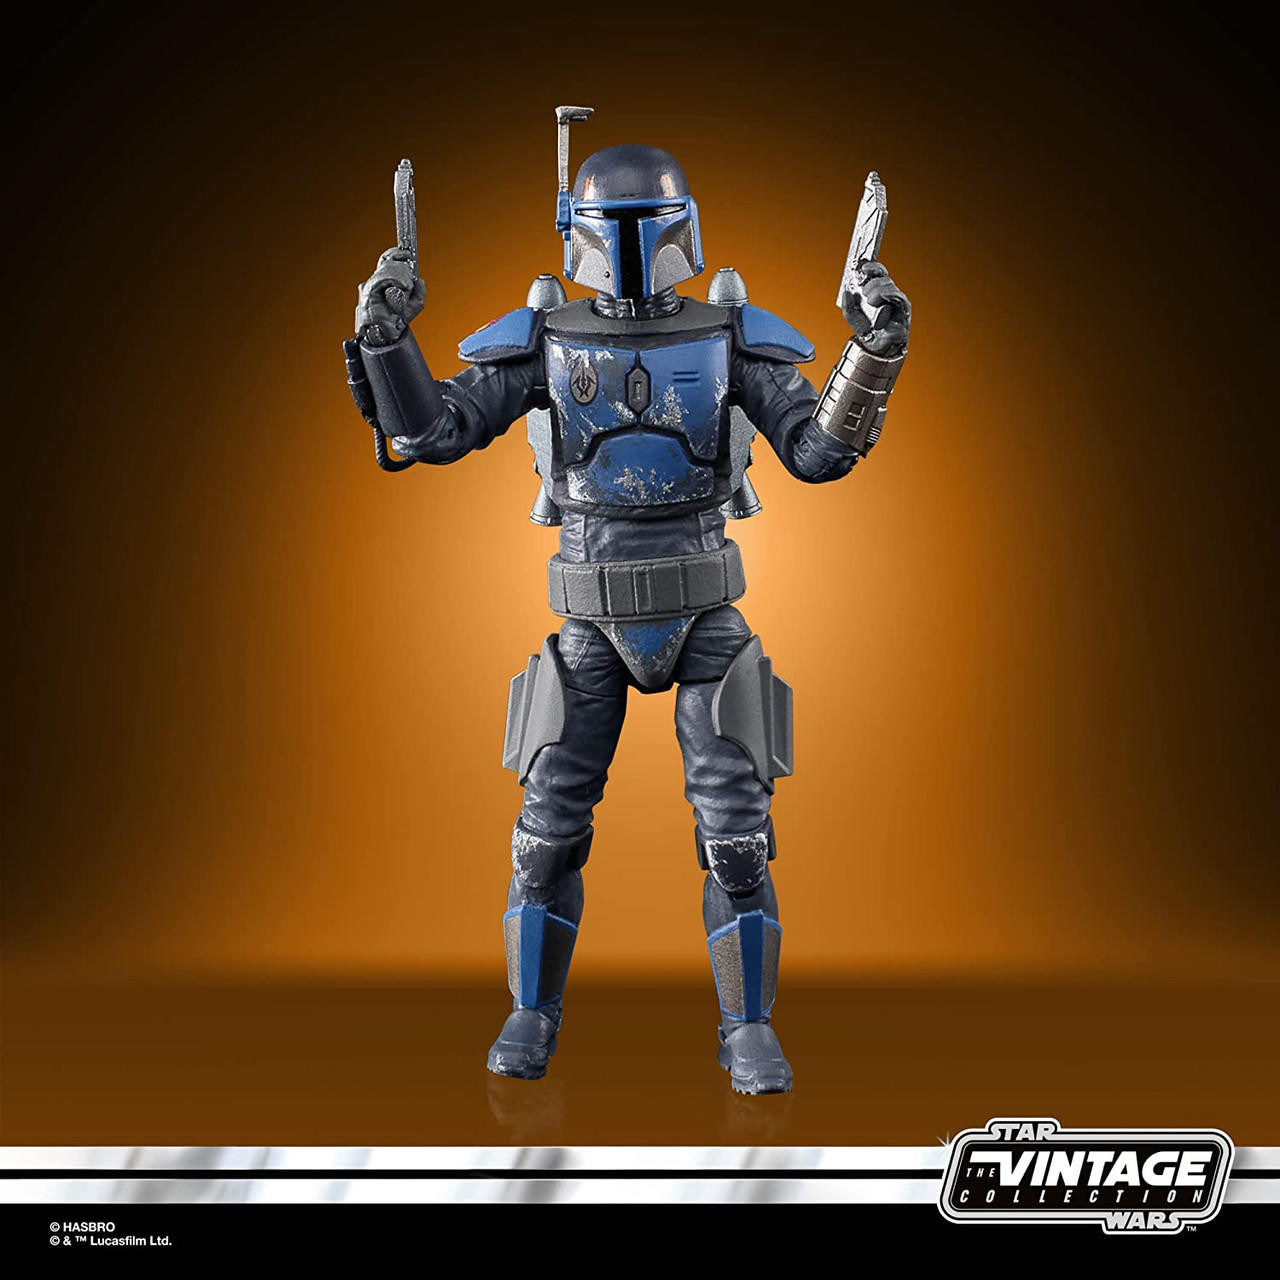 Cheap Gleaming Armor Star War The Mandalorian Mug, Star Wars Gifts